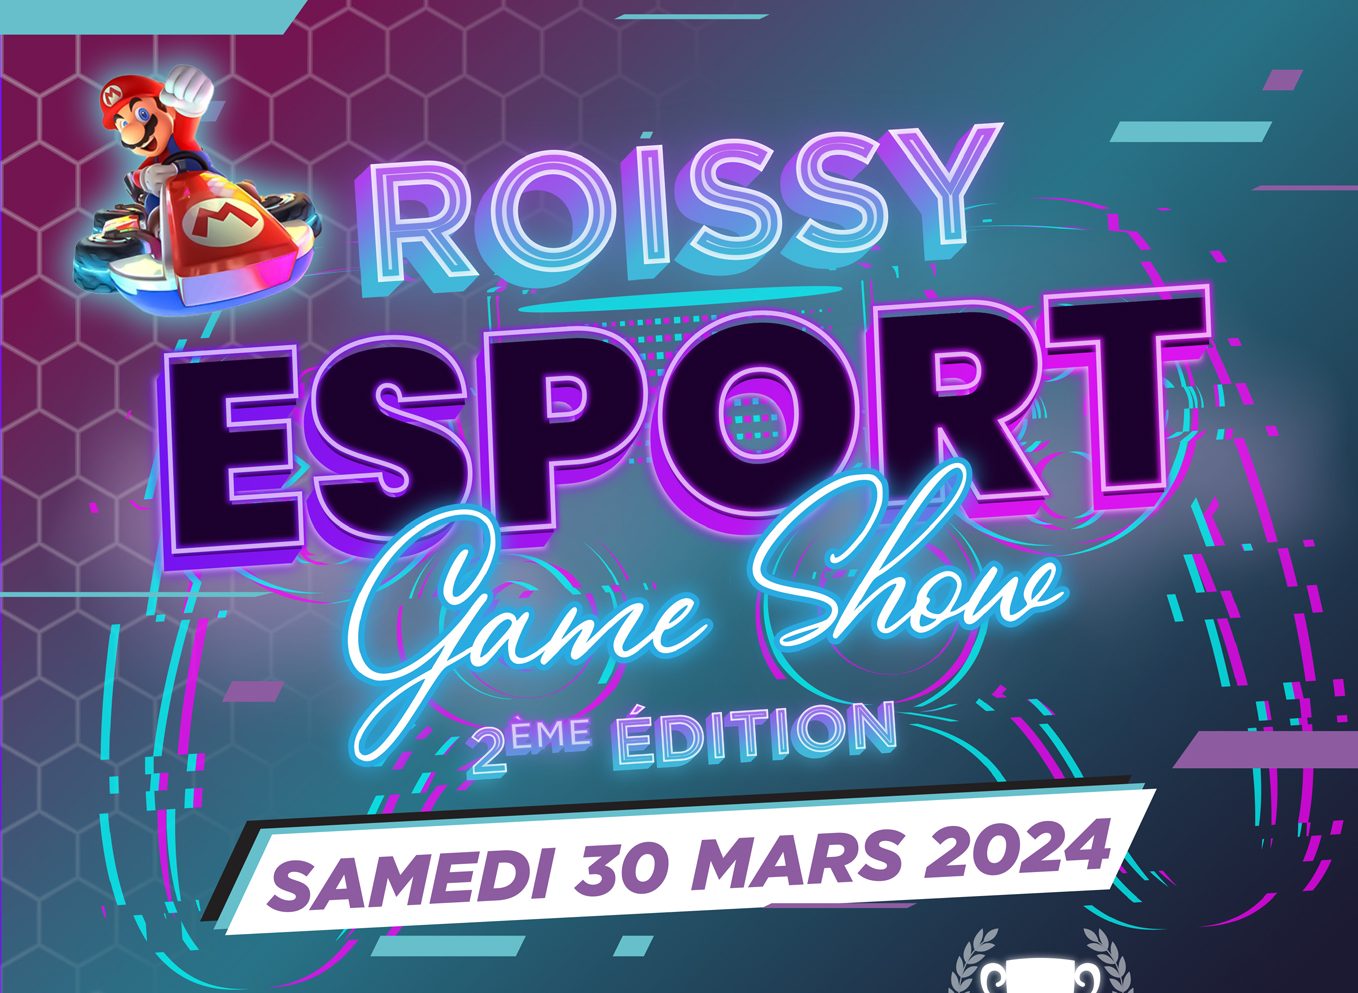 Il Roissy Esport Game Show ritorna il 30 marzo!